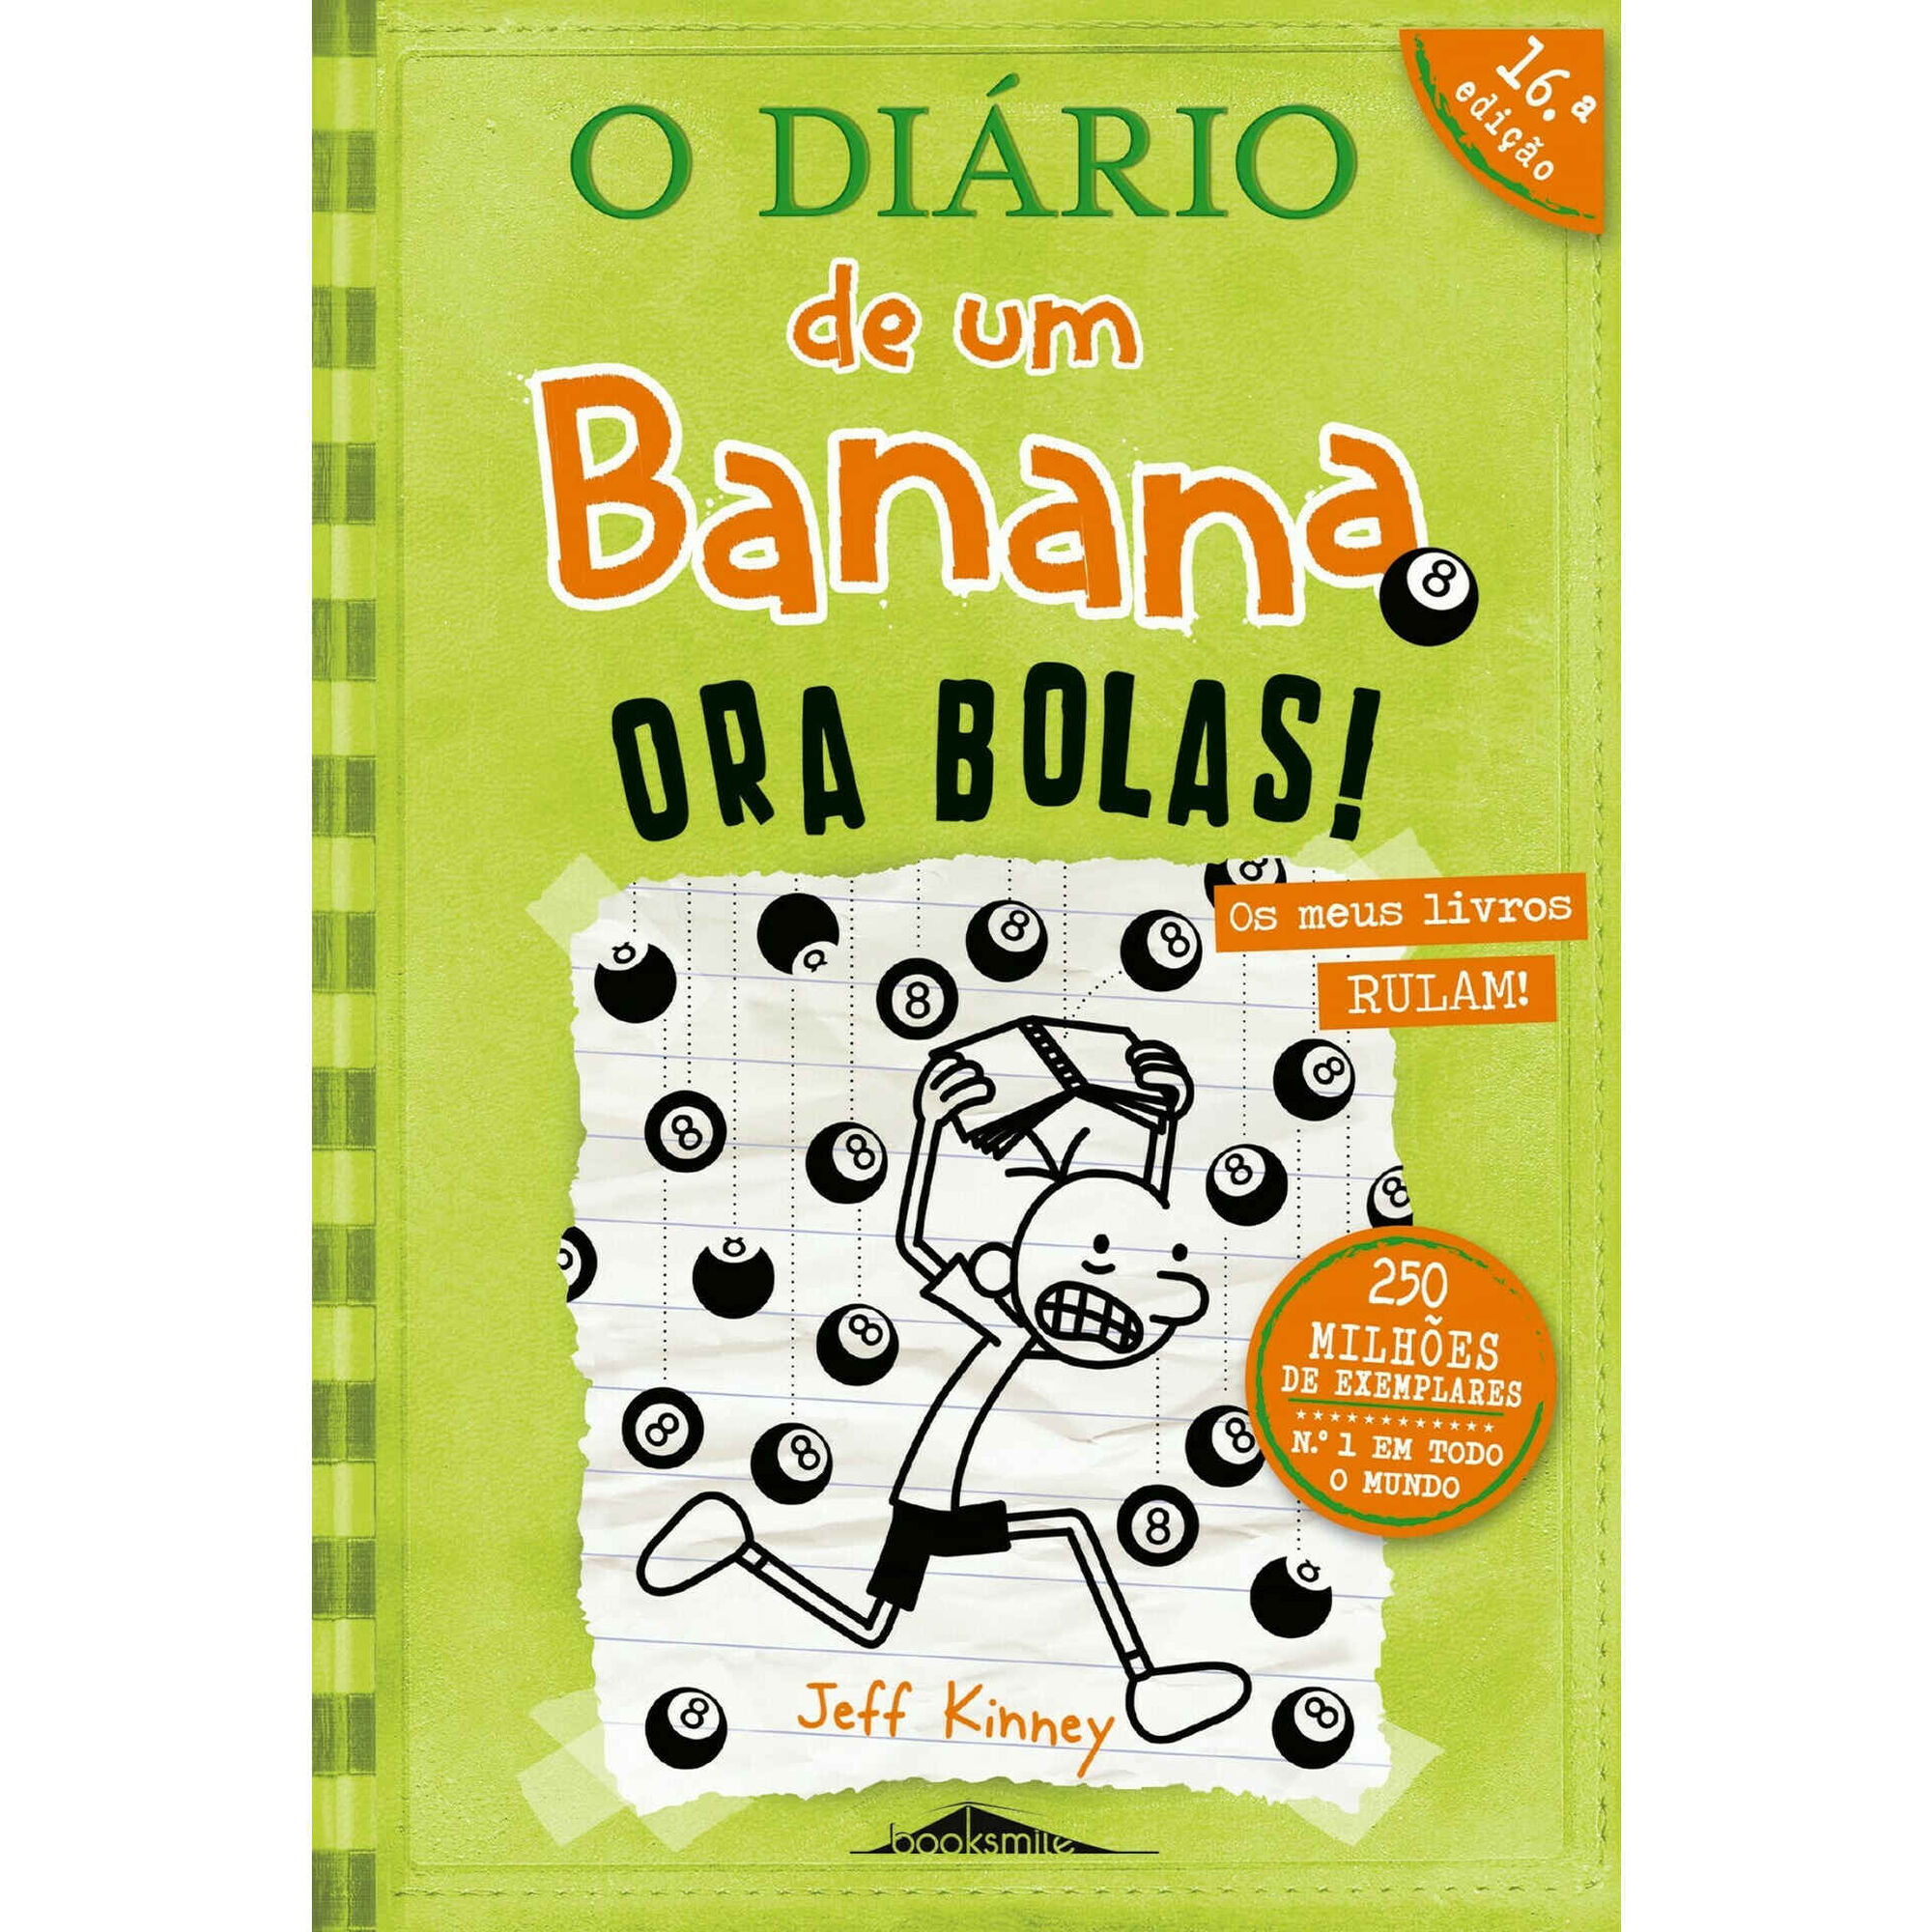 O Diário de um Banana 8 - Ora Bolas!